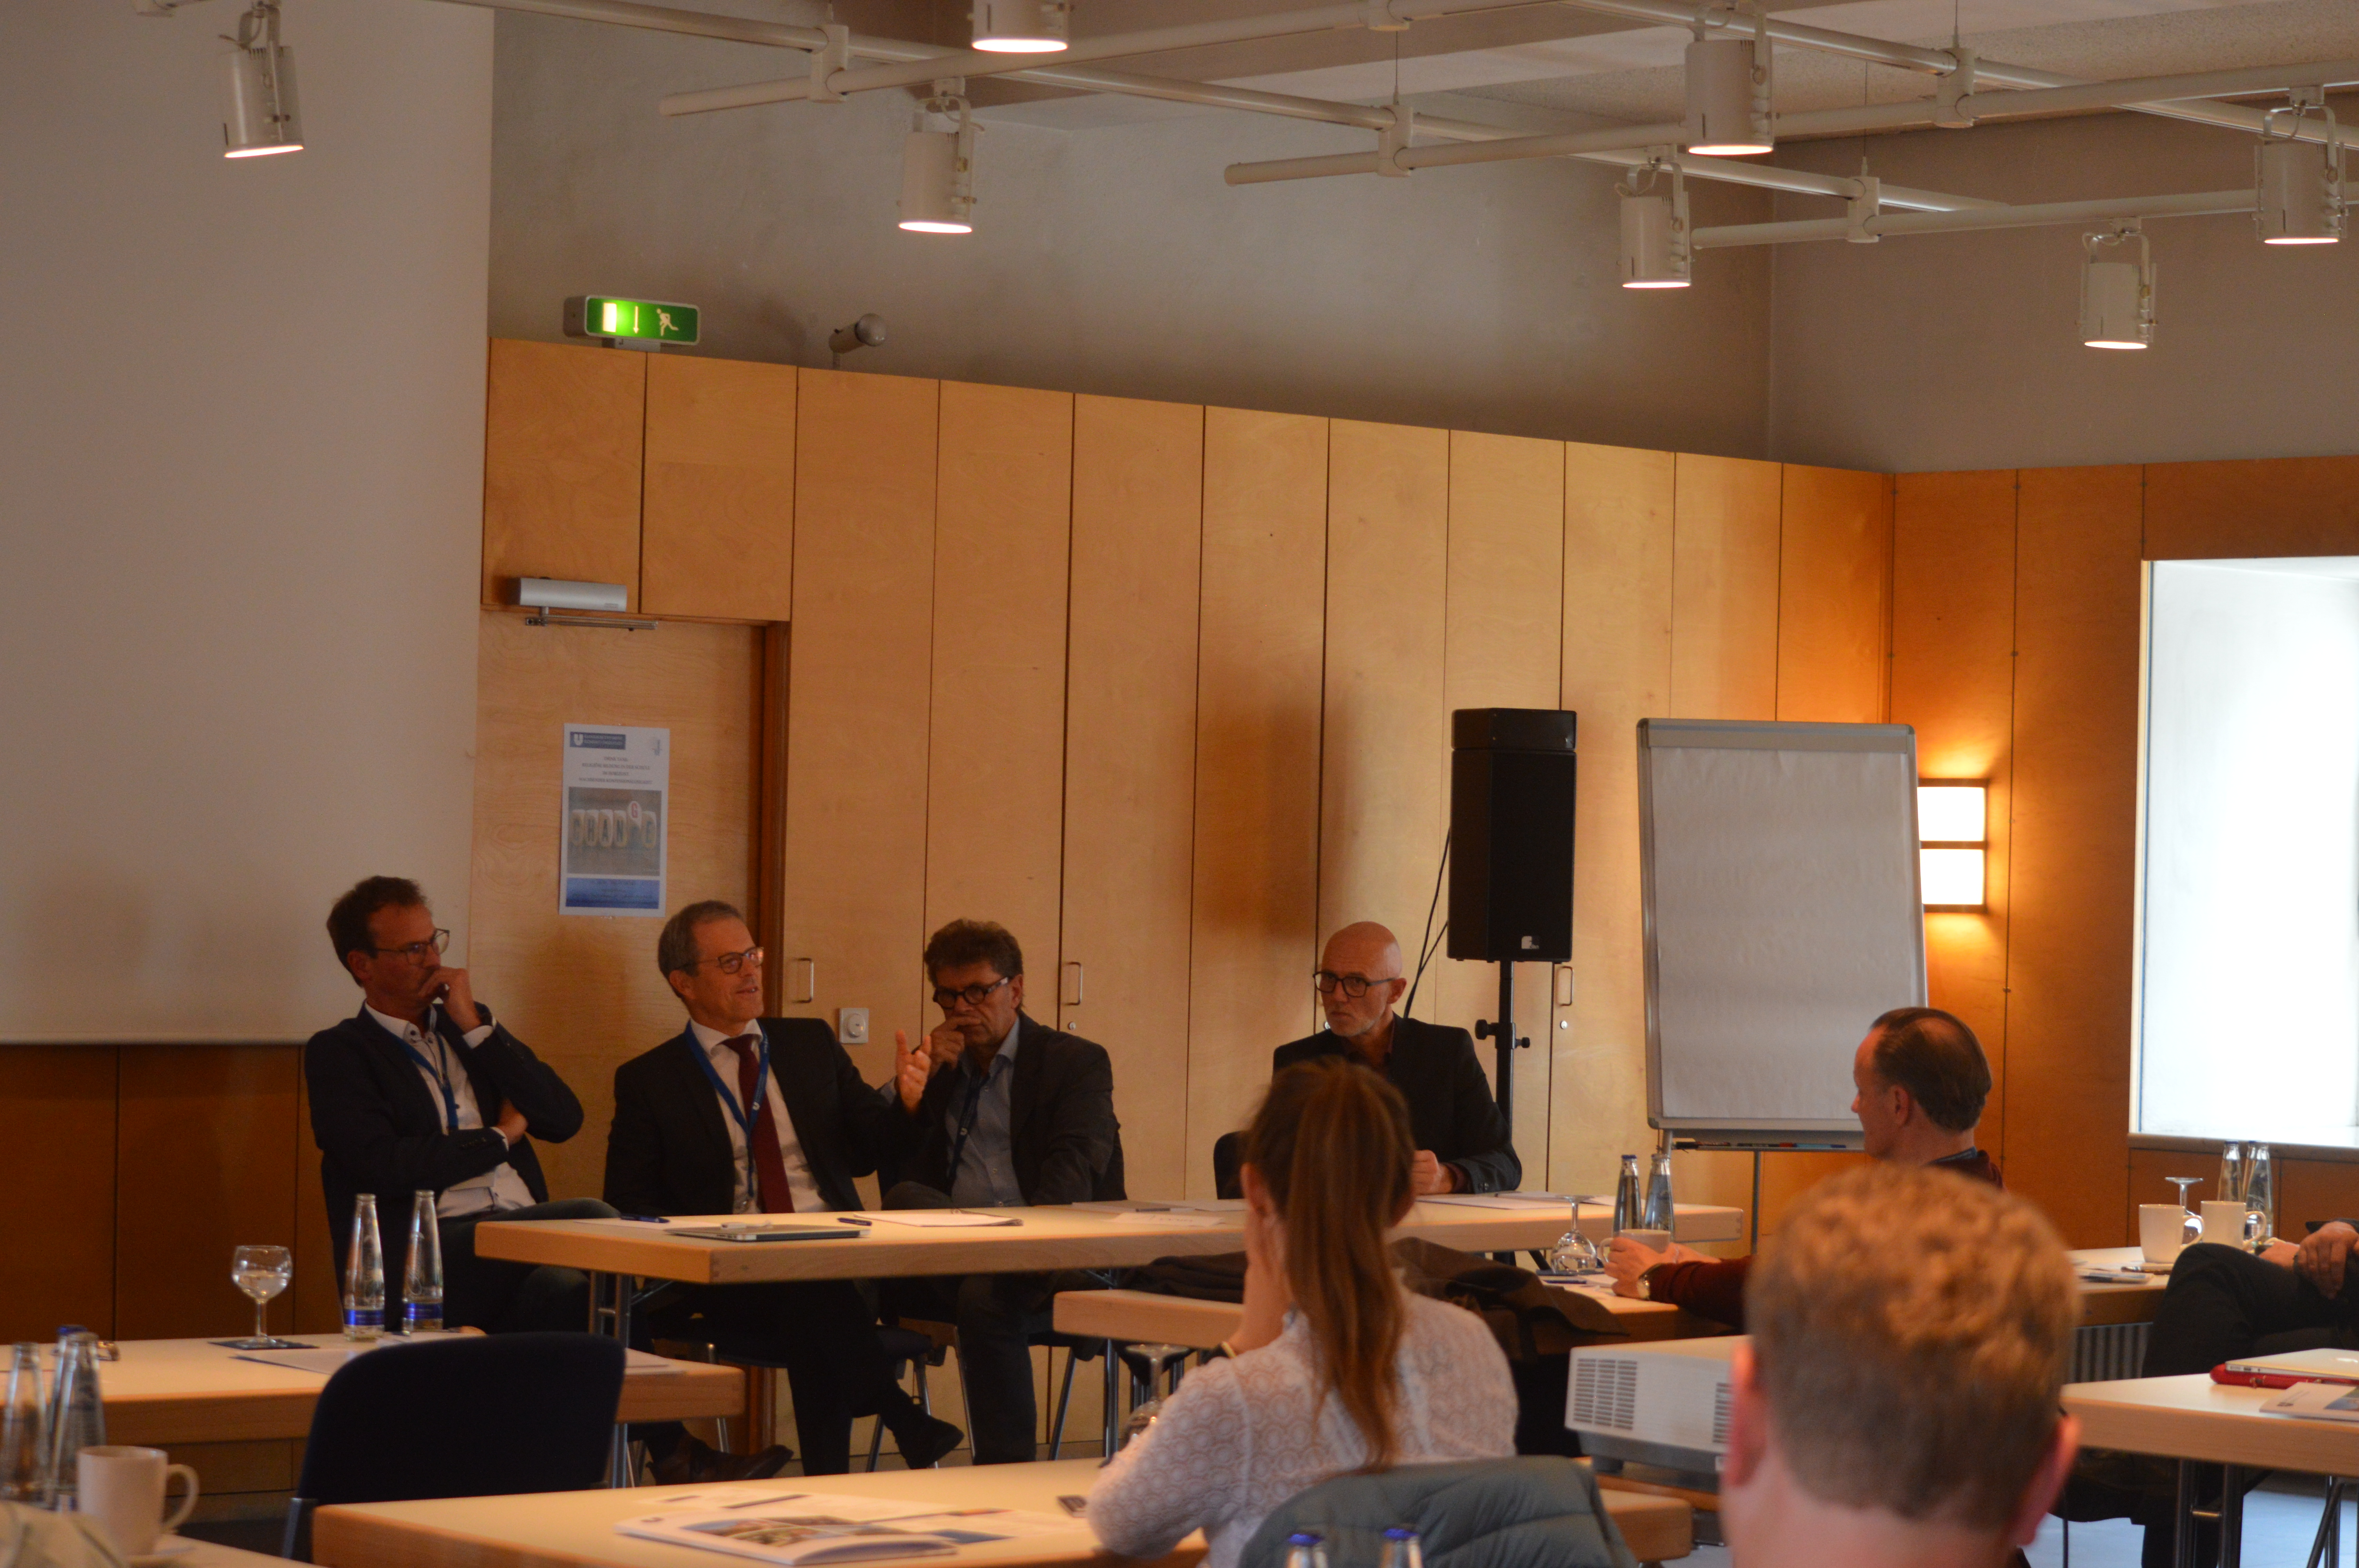 Diskussionsrunde: Prof. Dr. Jan Woppowa, Prof. Dr. Ulrich Kropac, Akad. Dir. Klaus König und Prof. Dr. Georg Wagensommer (von links nach rechts)